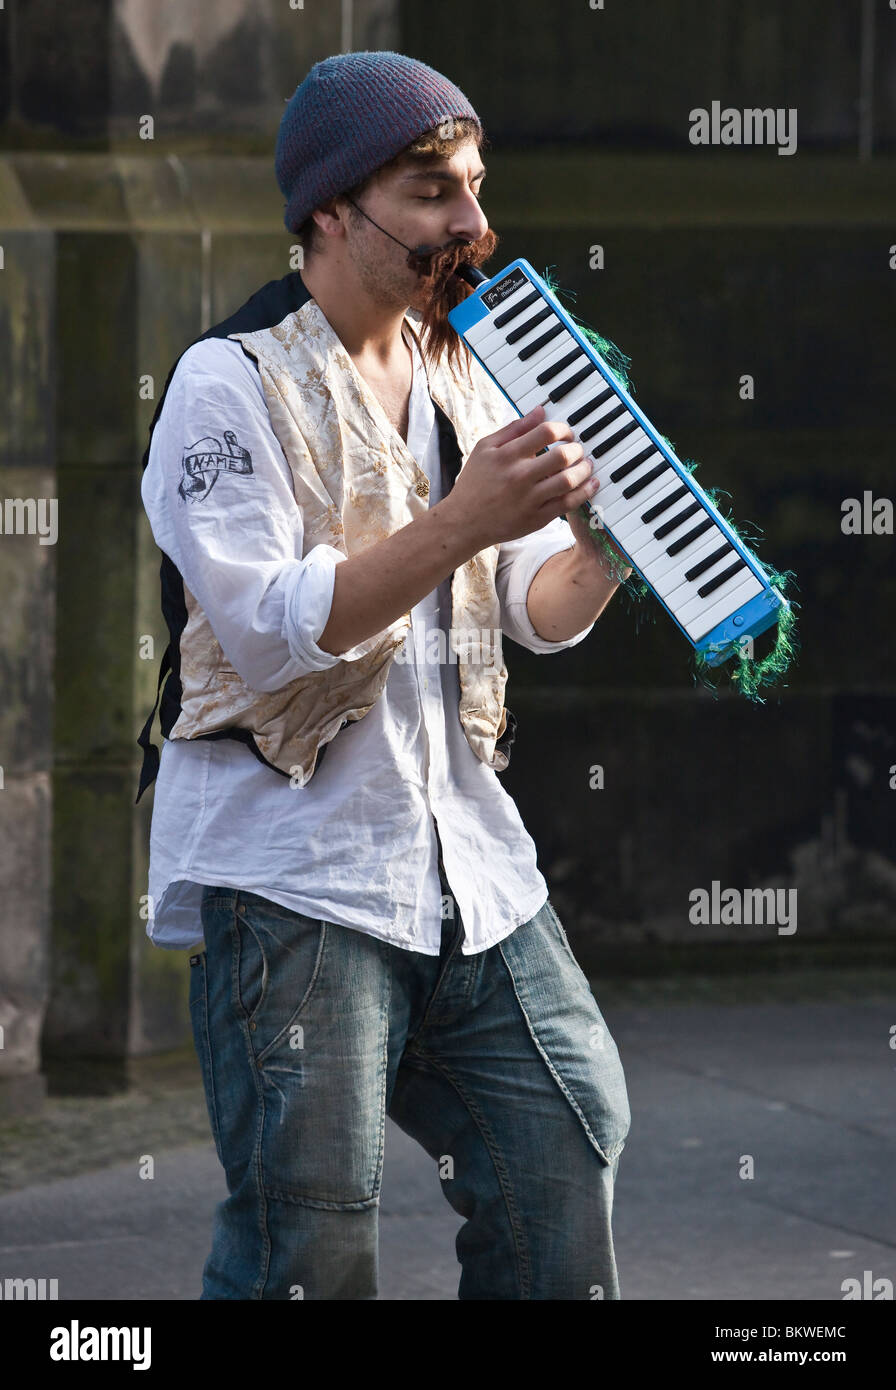 Street performer at the Edinburgh Festival Fringe Stock Photo